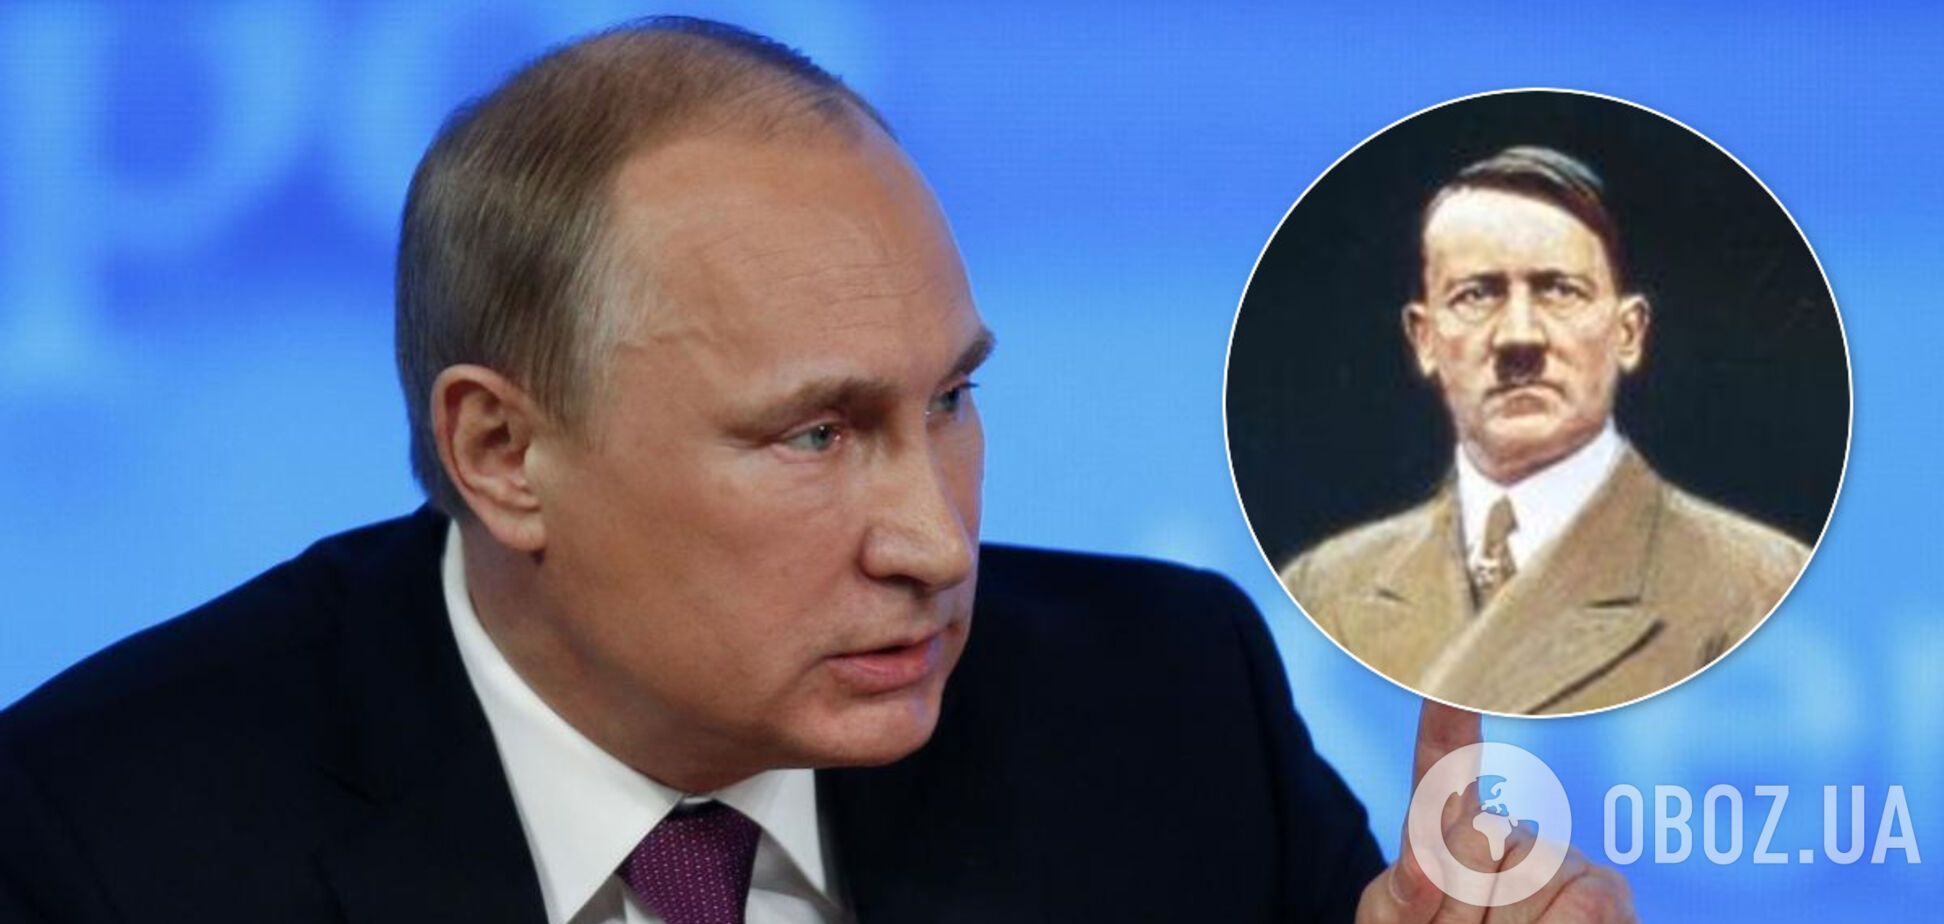 Путин злобно накинулся на Польшу, обвинив в сговоре с Гитлером